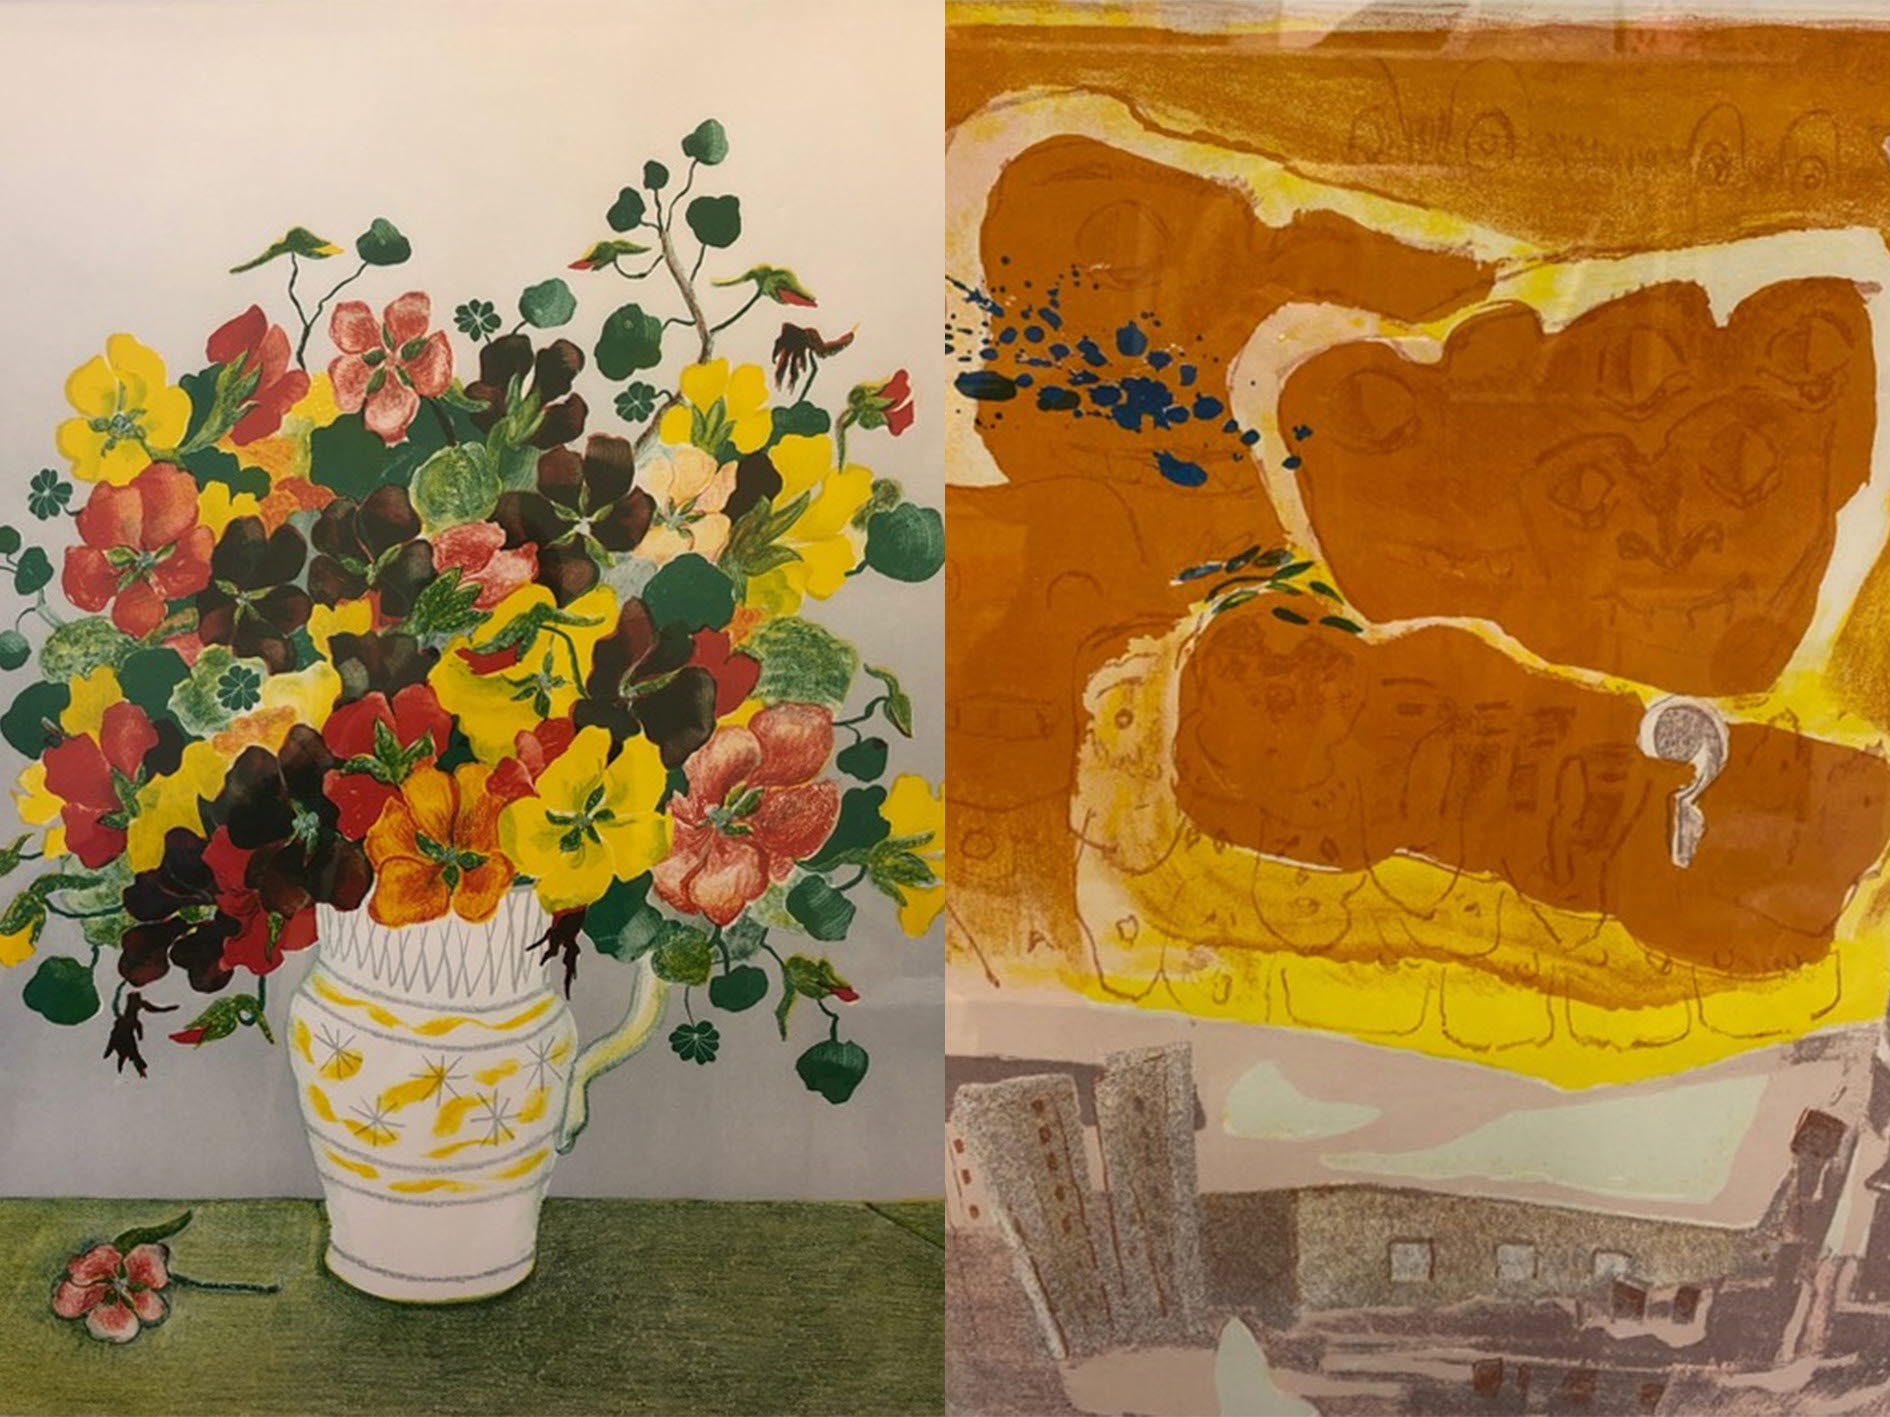 Två tavlor. Den första tavlan föreställer en vas med blommor. Den andra tavlan föreställer en byggnad där ansikten avtecknar sig i molnen.